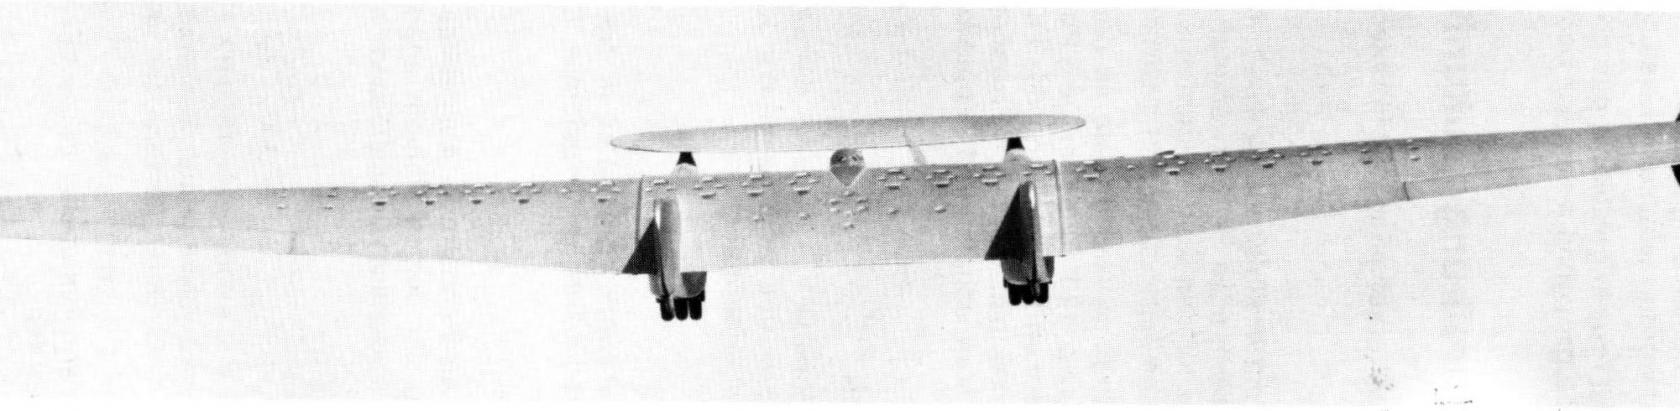 «Моноплан будущего» Junkers J.1000